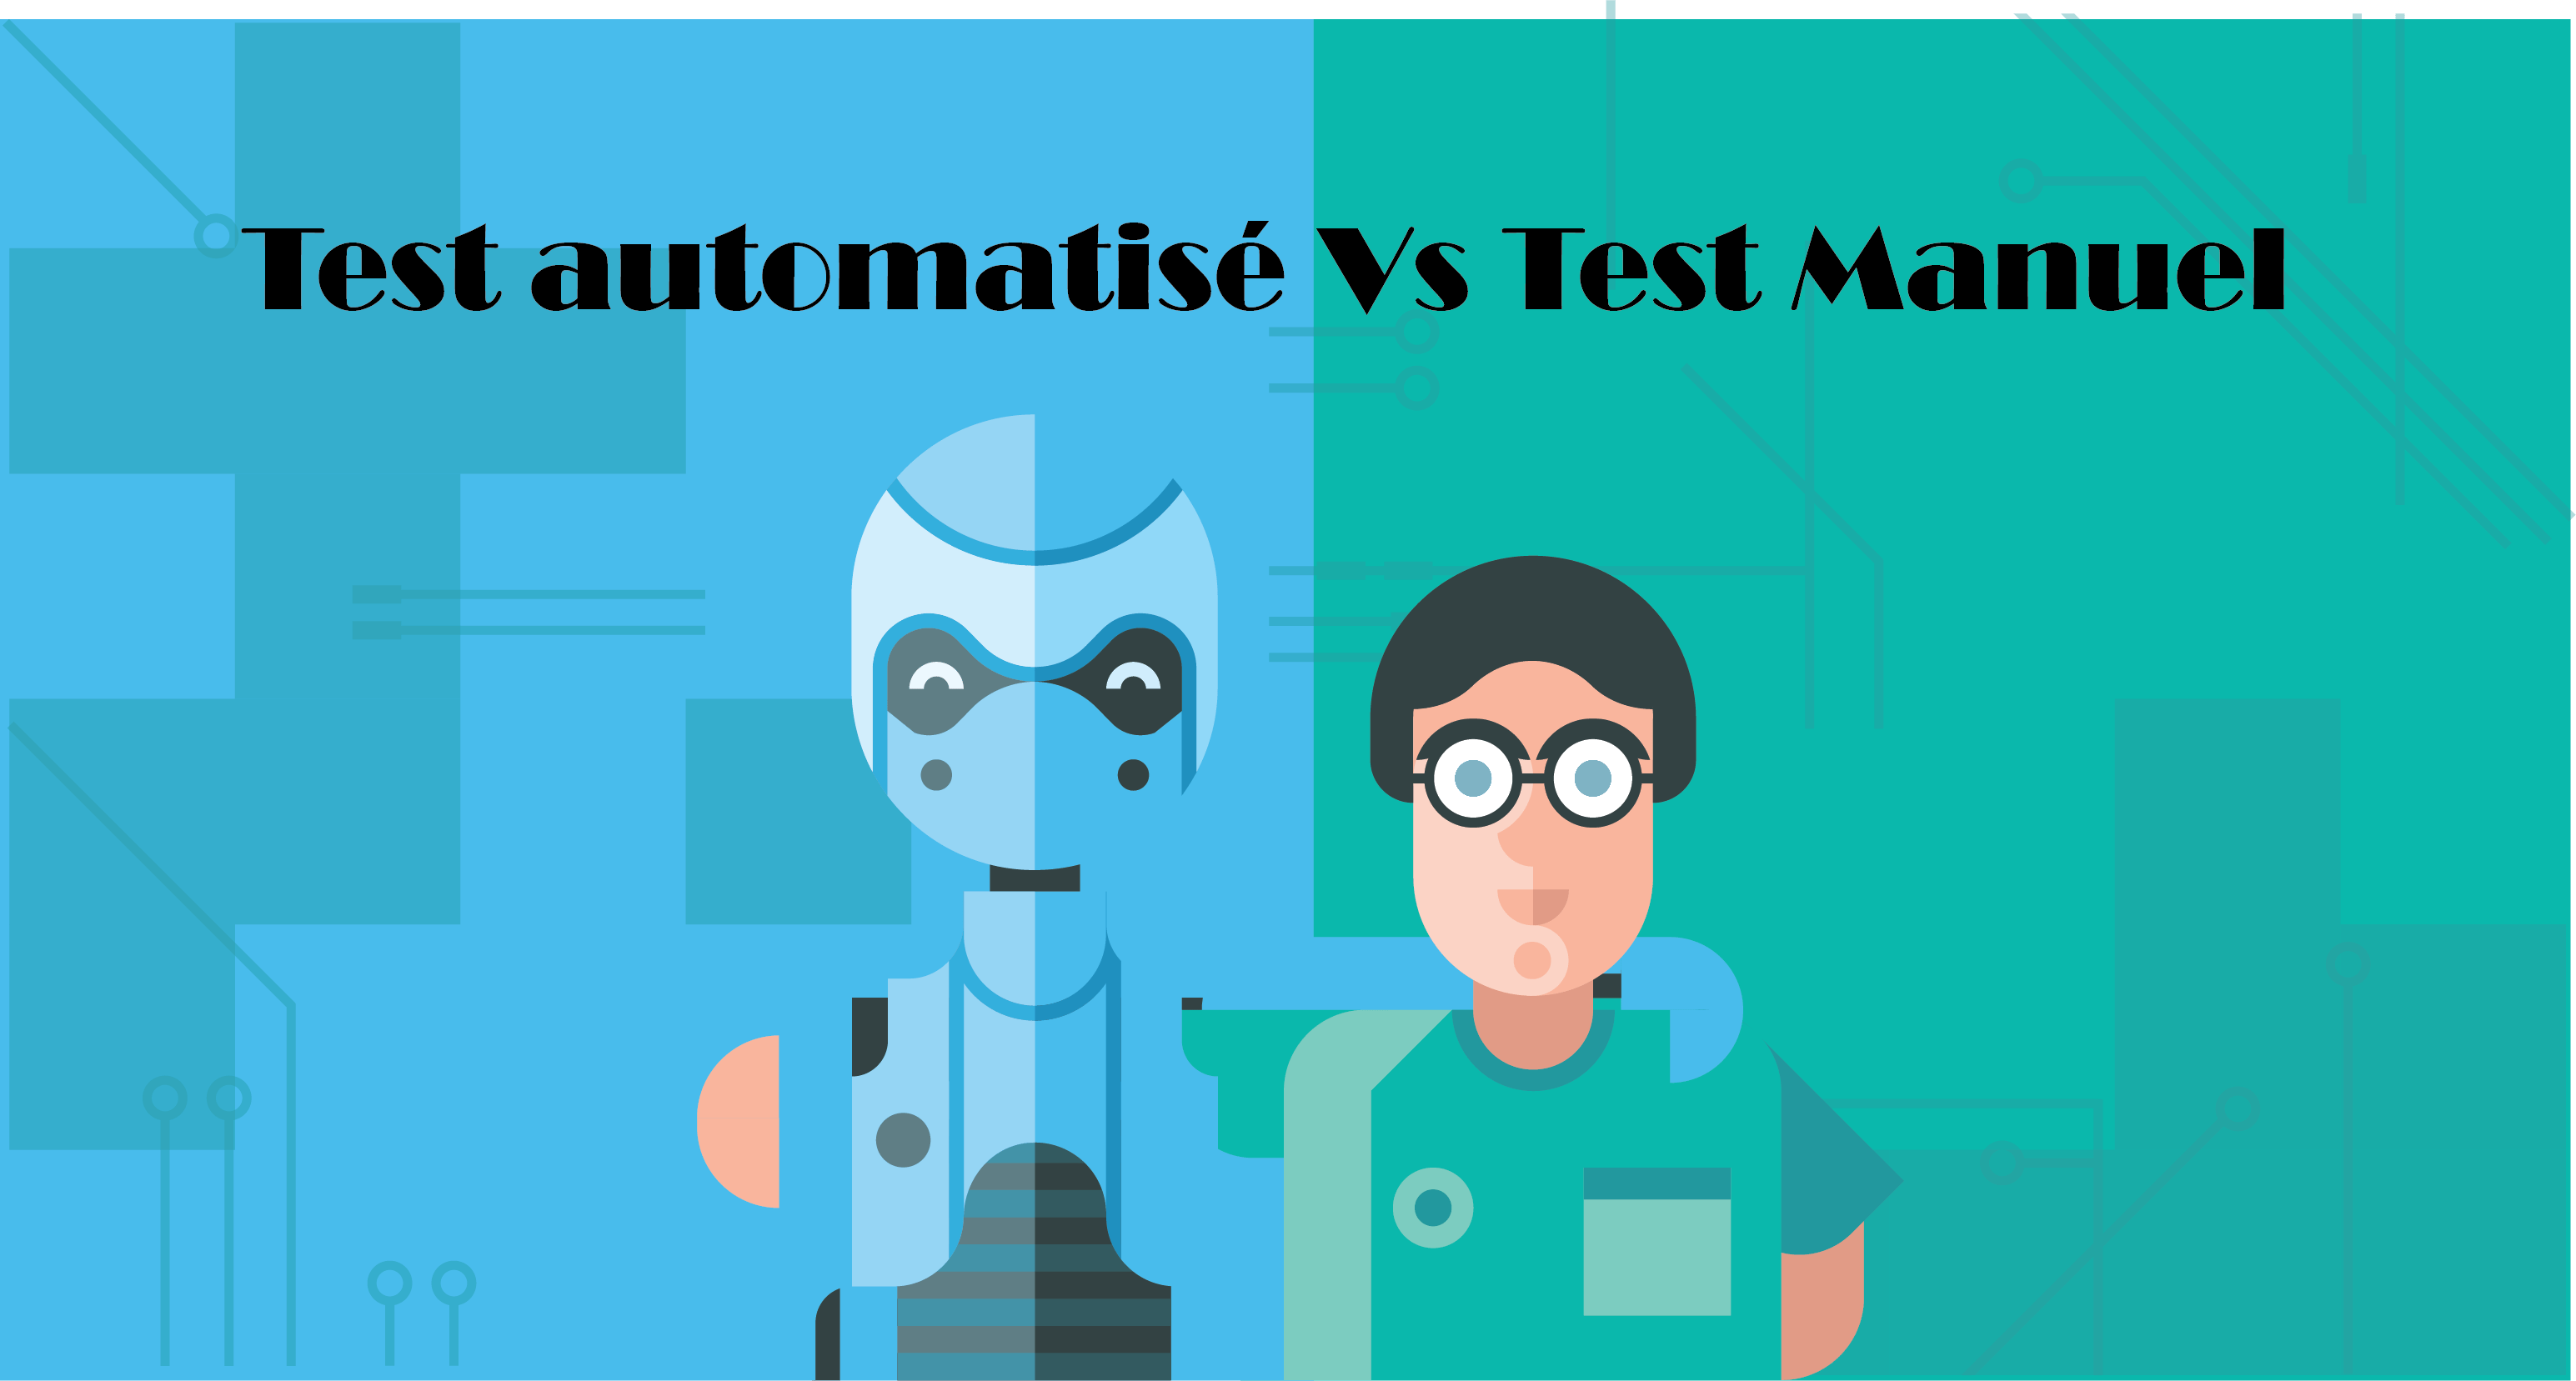 atomatisation test vs test manuel